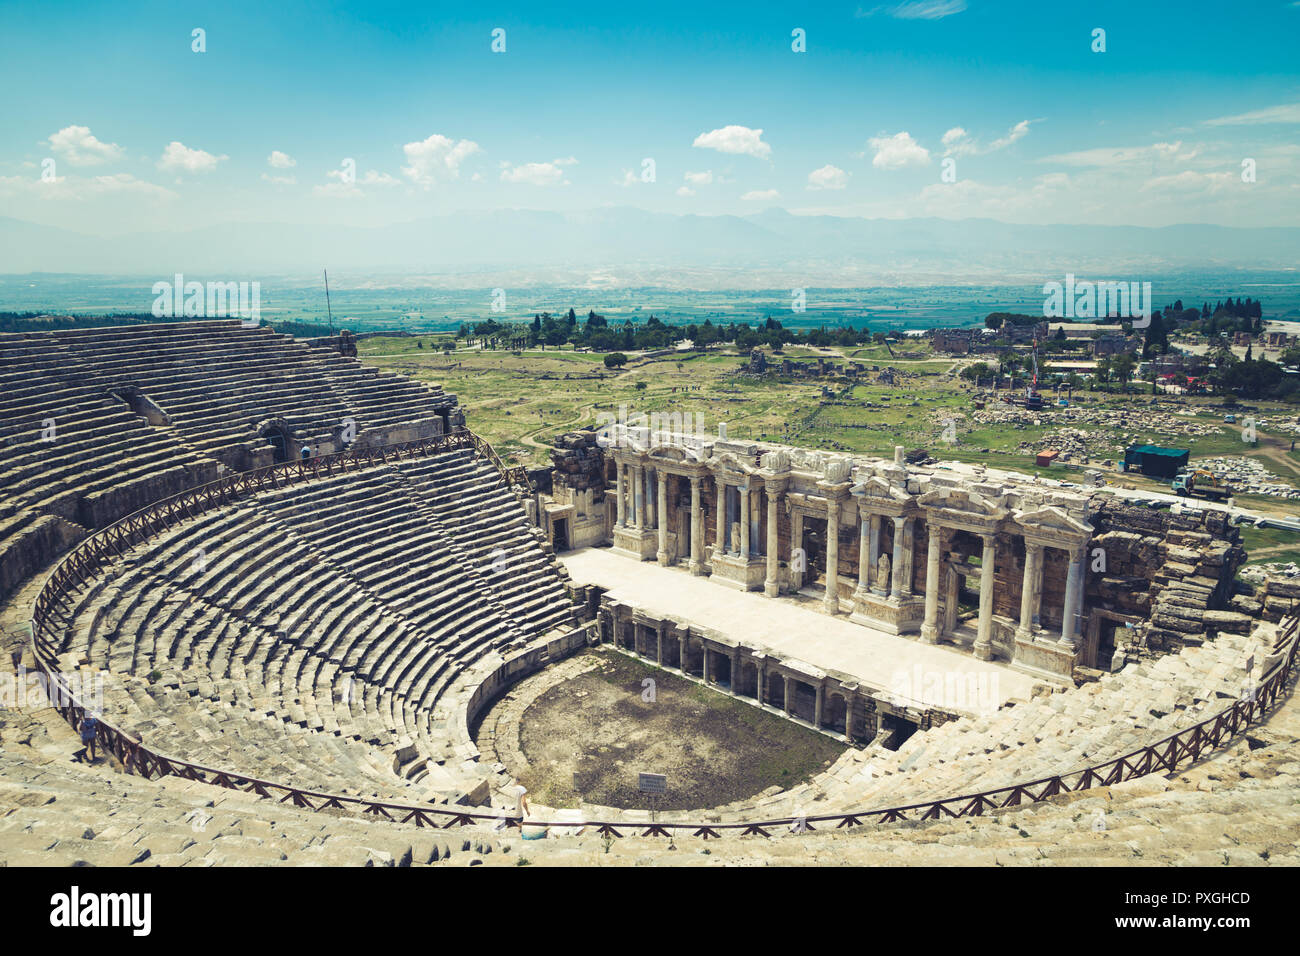 Ville antique de Hiérapolis, Pamukkale, Turquie. Le fascinant et beau beauté des sites historiques est ici. Hiérapolis de Phrygie, Denizli, T Banque D'Images